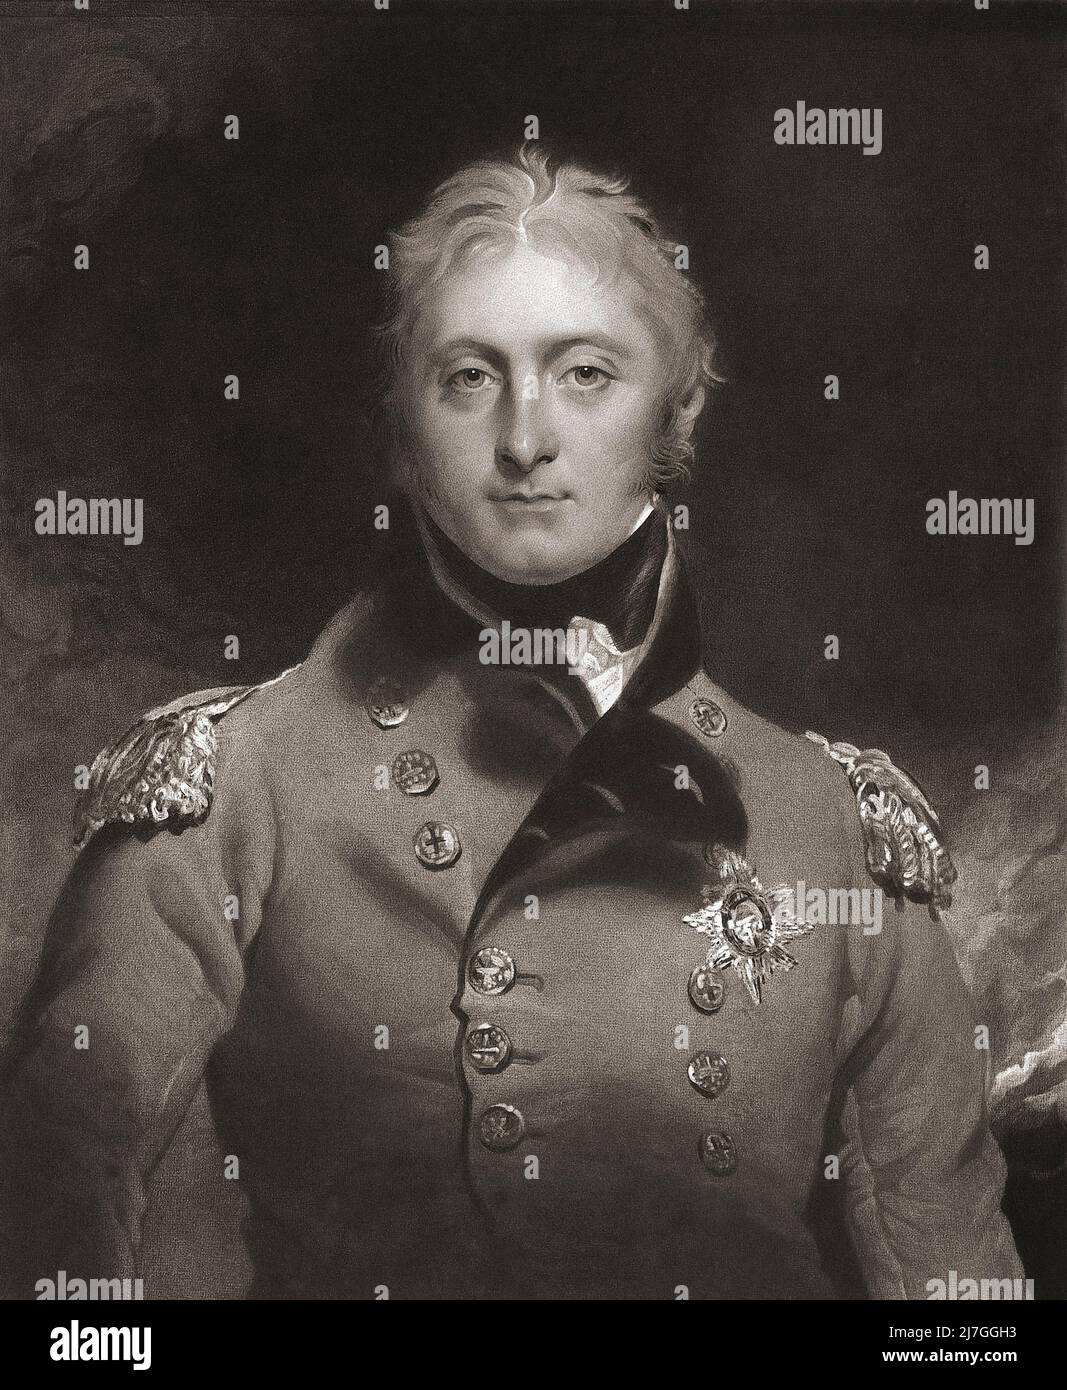 Luogotenente generale Sir John Moore, 1761 - 1809. Militare scozzese dell'esercito britannico che è stato ucciso alla battaglia di Corunna durante la guerra della penisola. Inciso da Charles Turner dopo il dipinto di Sir Thomas Lawrence. Foto Stock